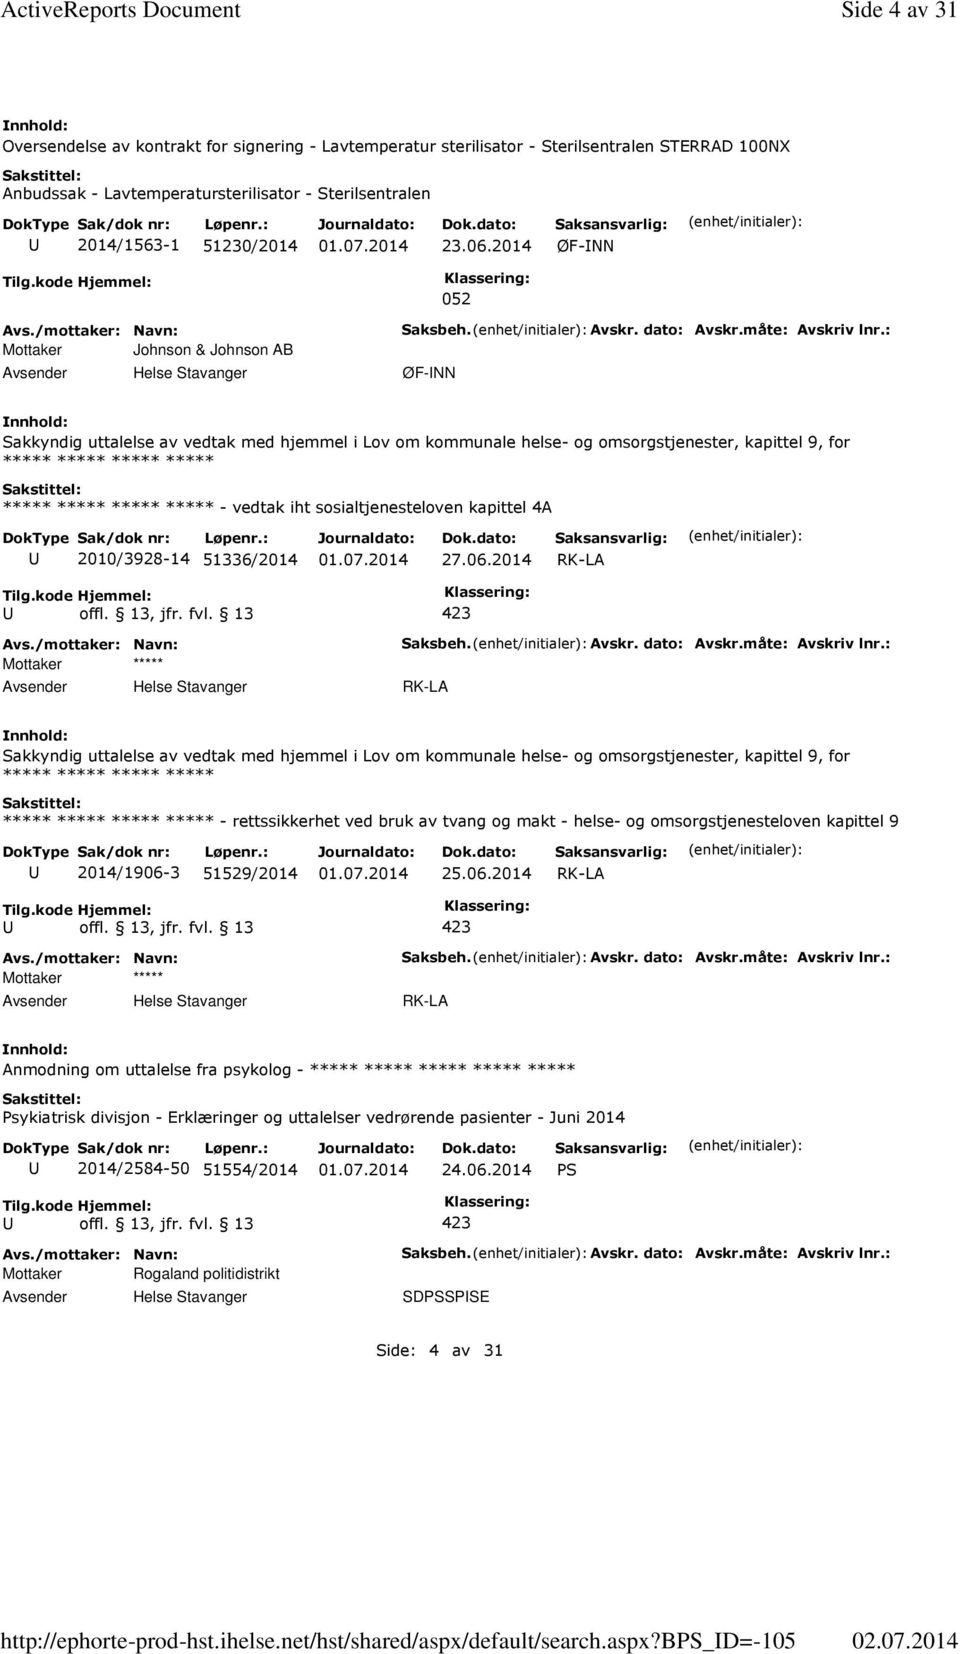 b_d=-105 Side 4 av 31 Oversendelse av kontrakt for signering - Lavtemperatur sterilisator - Sterilsentralen STERRAD 100NX Anbudssak - Lavtemperatursterilisator - Sterilsentralen 2014/1563-1